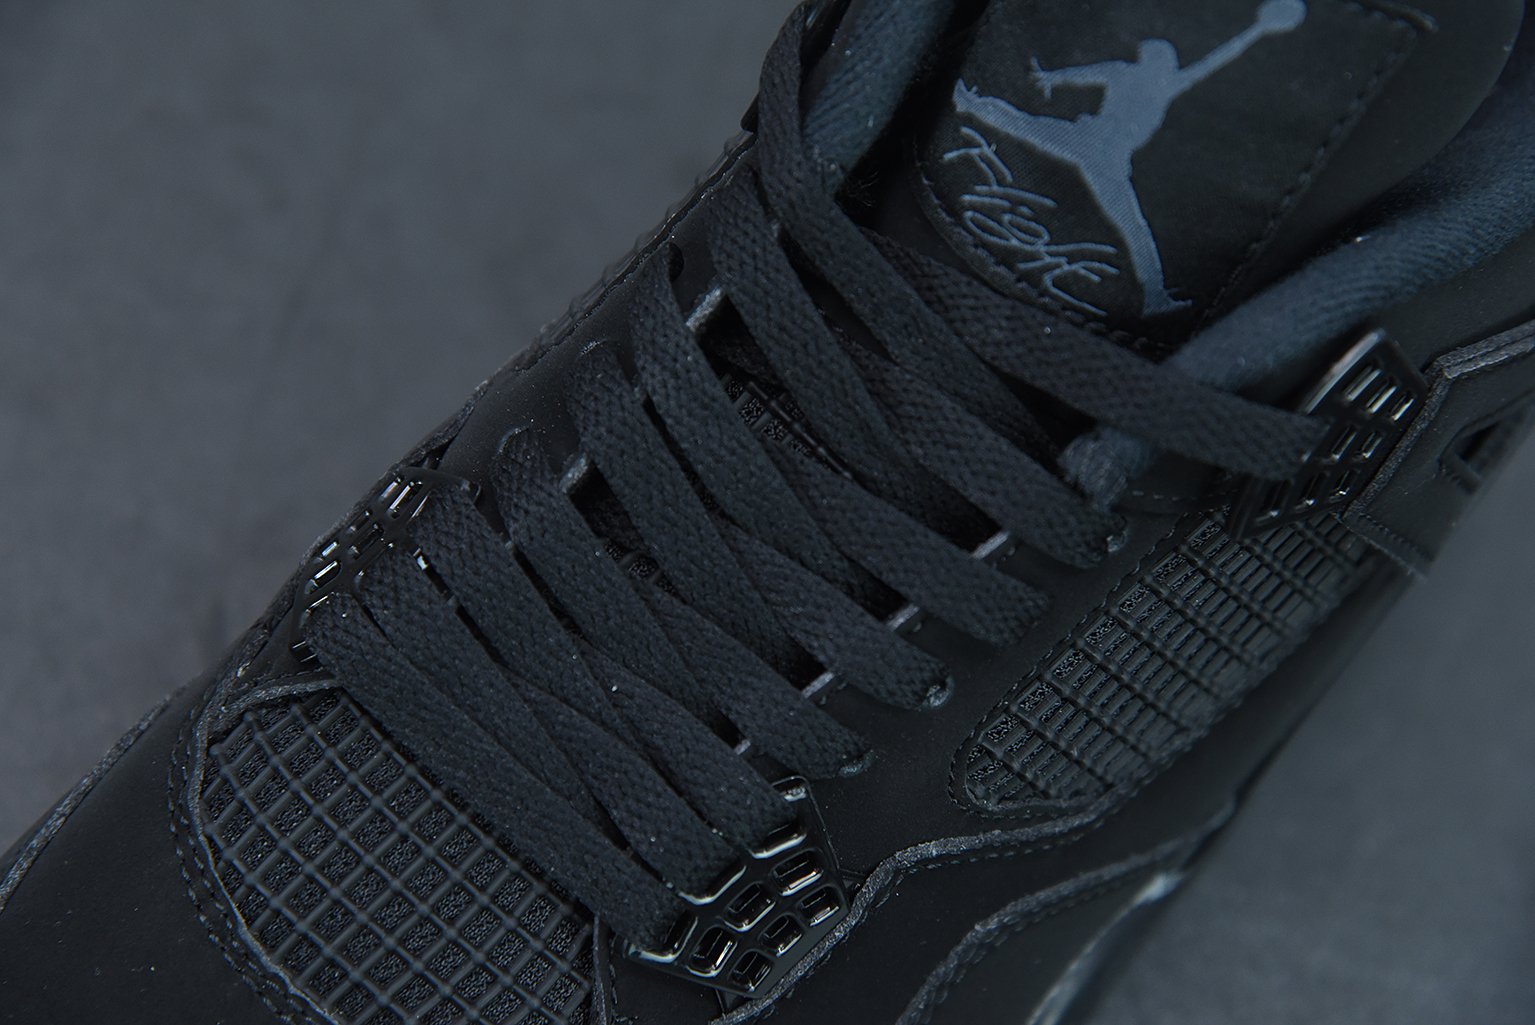 💖Buy 1 PK Sneakers to get this Pair $59.9💖 G5 Jordan 4 Retro Black Cat (2020),CU1110-010